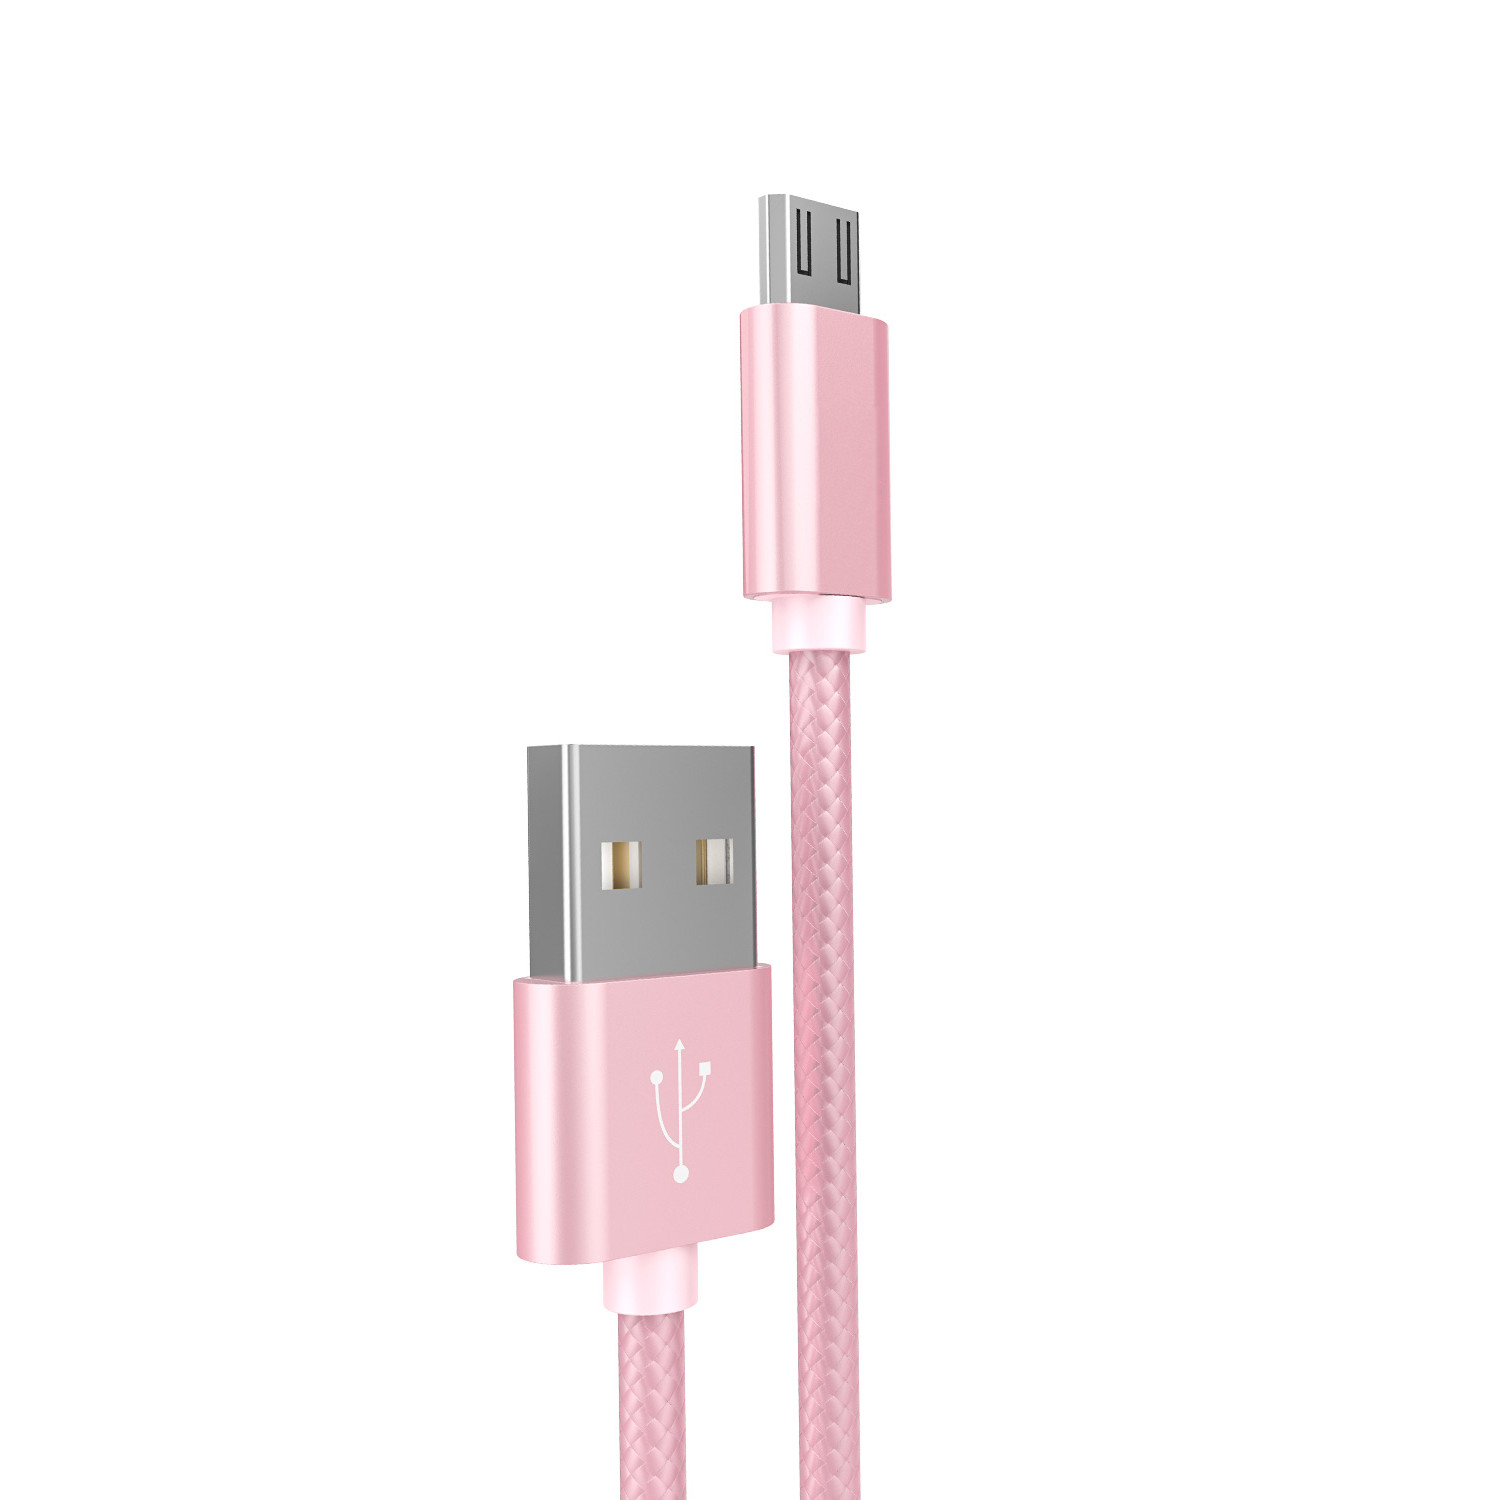 Cáp sạc Hoco X2 Micro USB 1 mét dây dù - Tặng kẹp bảo vệ đầu cáp - Hàng chính hãng